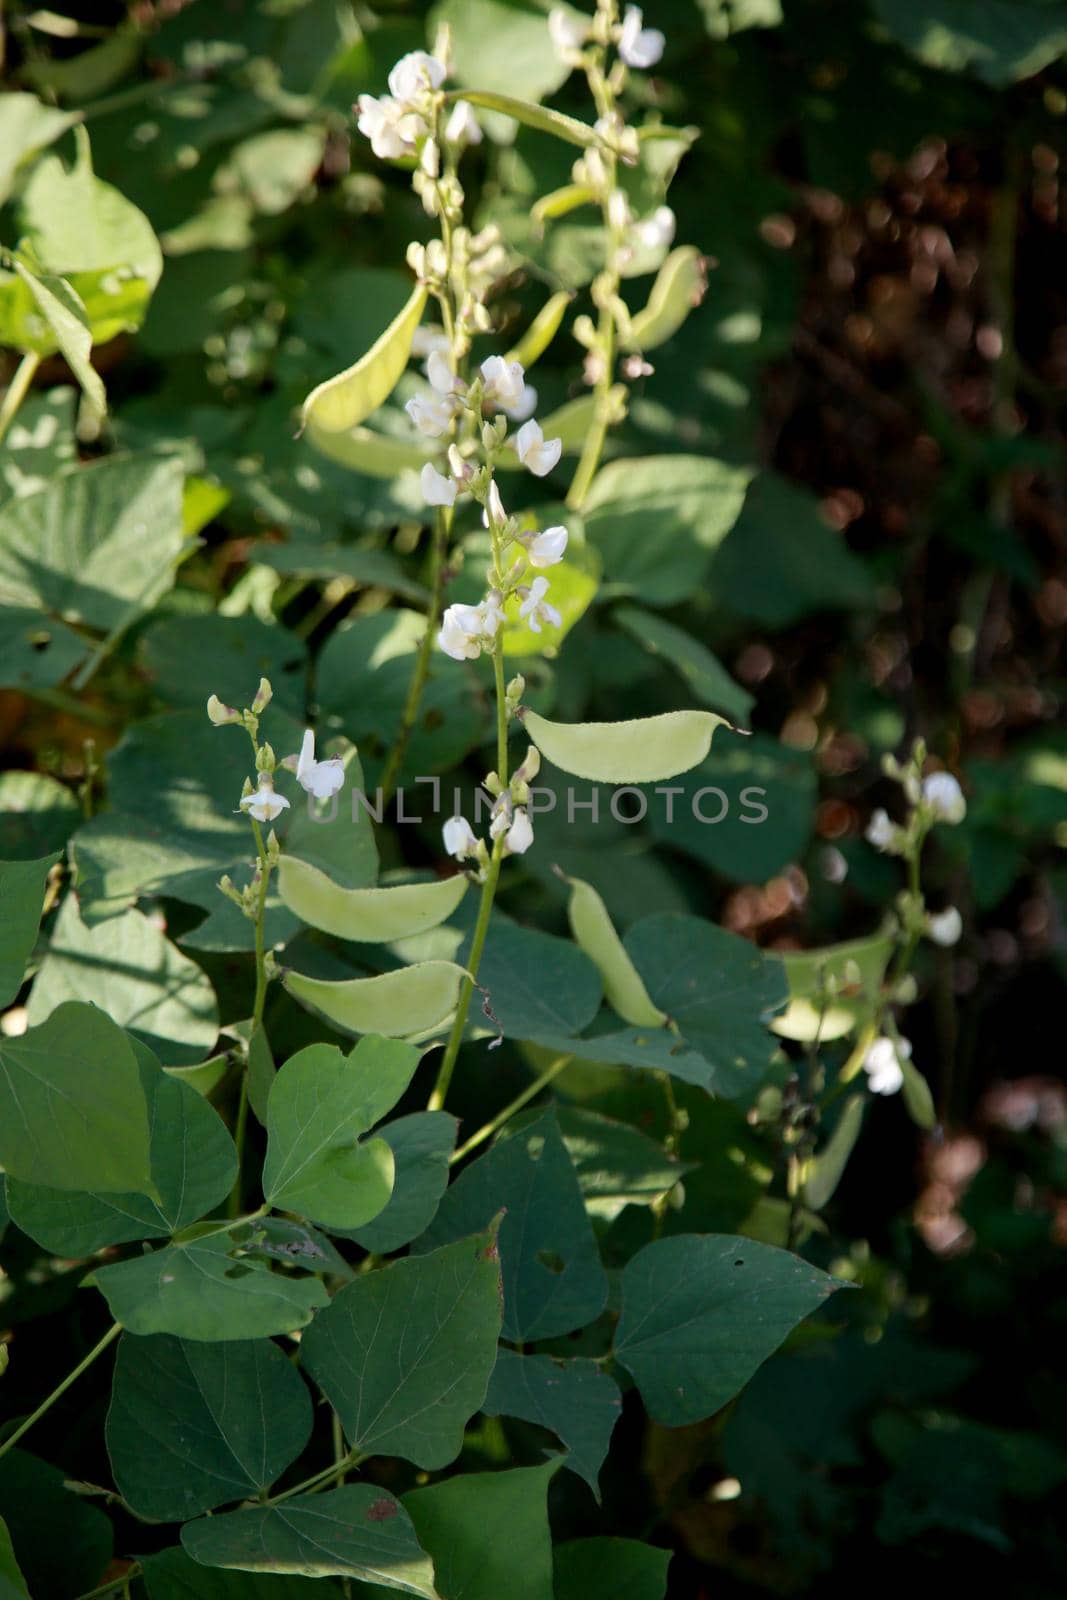 mangalo bean plantation in bahia by joasouza